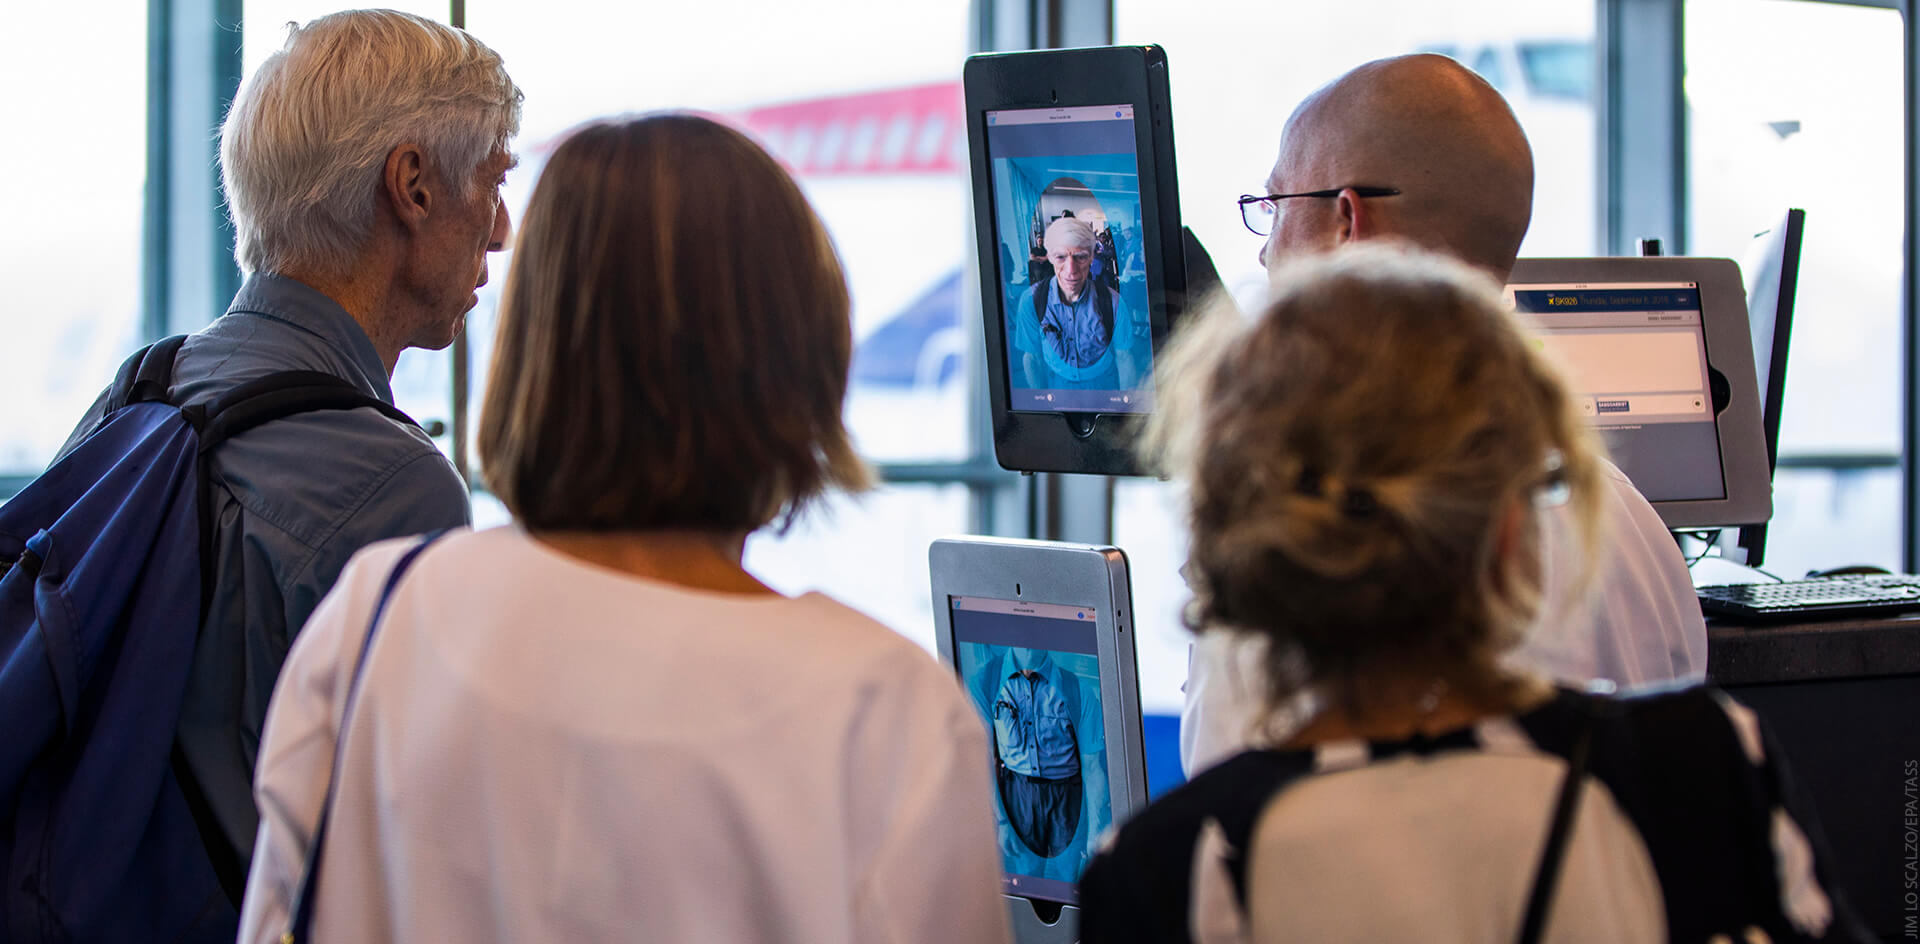 Аэропорты по всему миру наращивают использование биометрии пассажиров